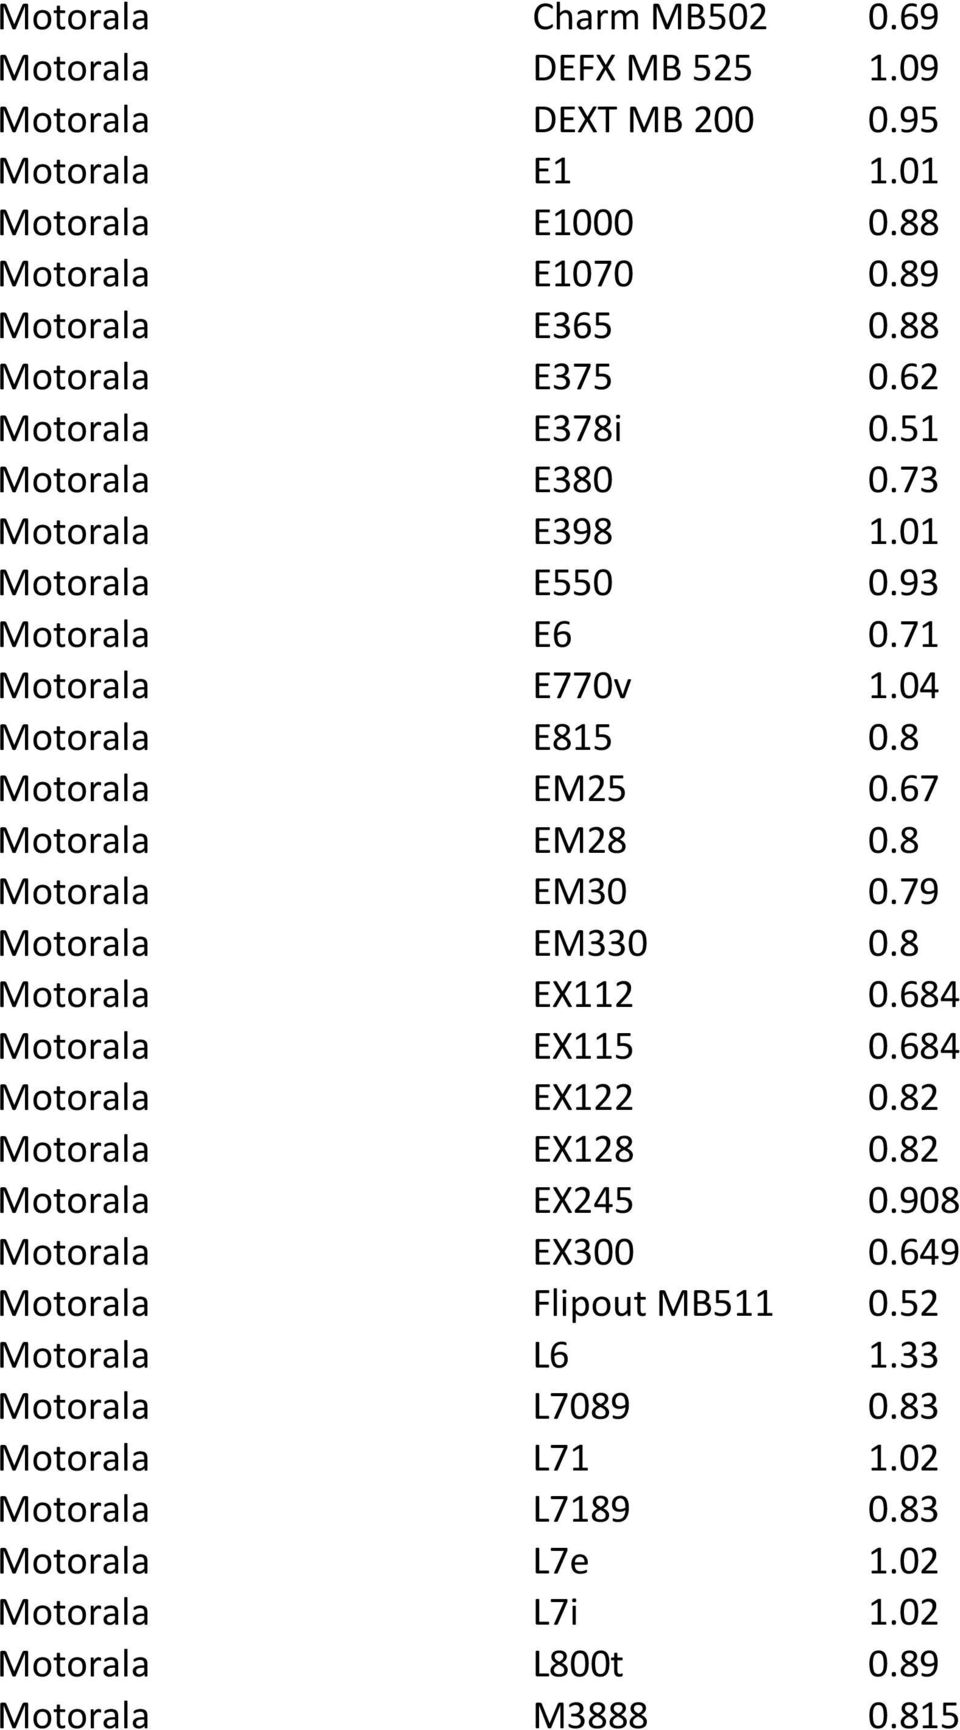 8 Motorala EM30 0.79 Motorala EM330 0.8 Motorala EX112 0.684 Motorala EX115 0.684 Motorala EX122 0.82 Motorala EX128 0.82 Motorala EX245 0.908 Motorala EX300 0.